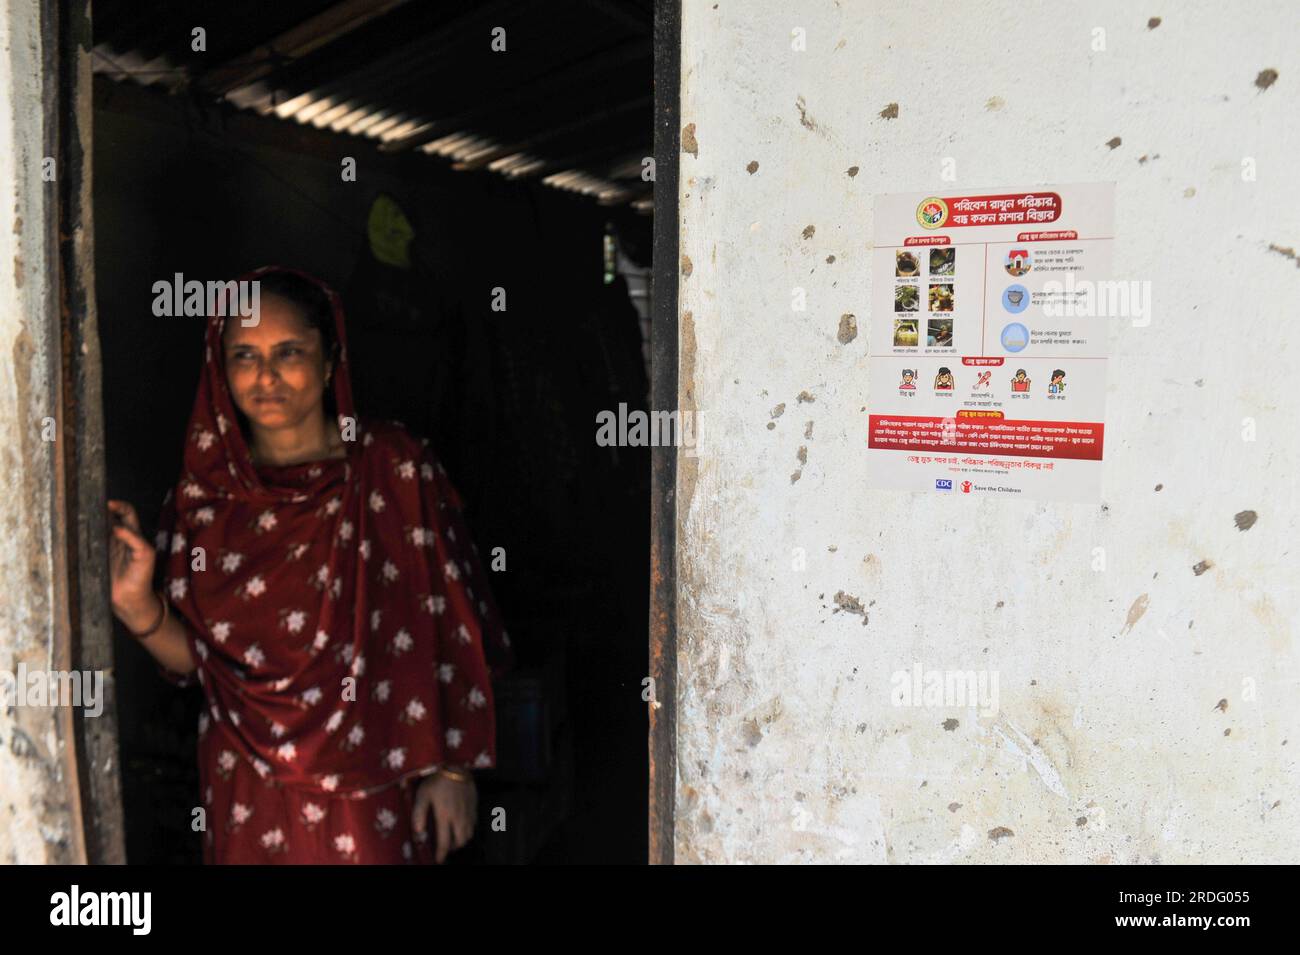 Sylhet City Corporation personale del Dipartimento della salute incollare adesivi sul muro della casa. Da giugno Sylhet City Corporation e Save the Children stanno conducendo programmi di sensibilizzazione pubblica per prevenire la diffusione della dengue in diversi quartieri della città di Sylhet. Sylhet, Bangladesh. Foto Stock